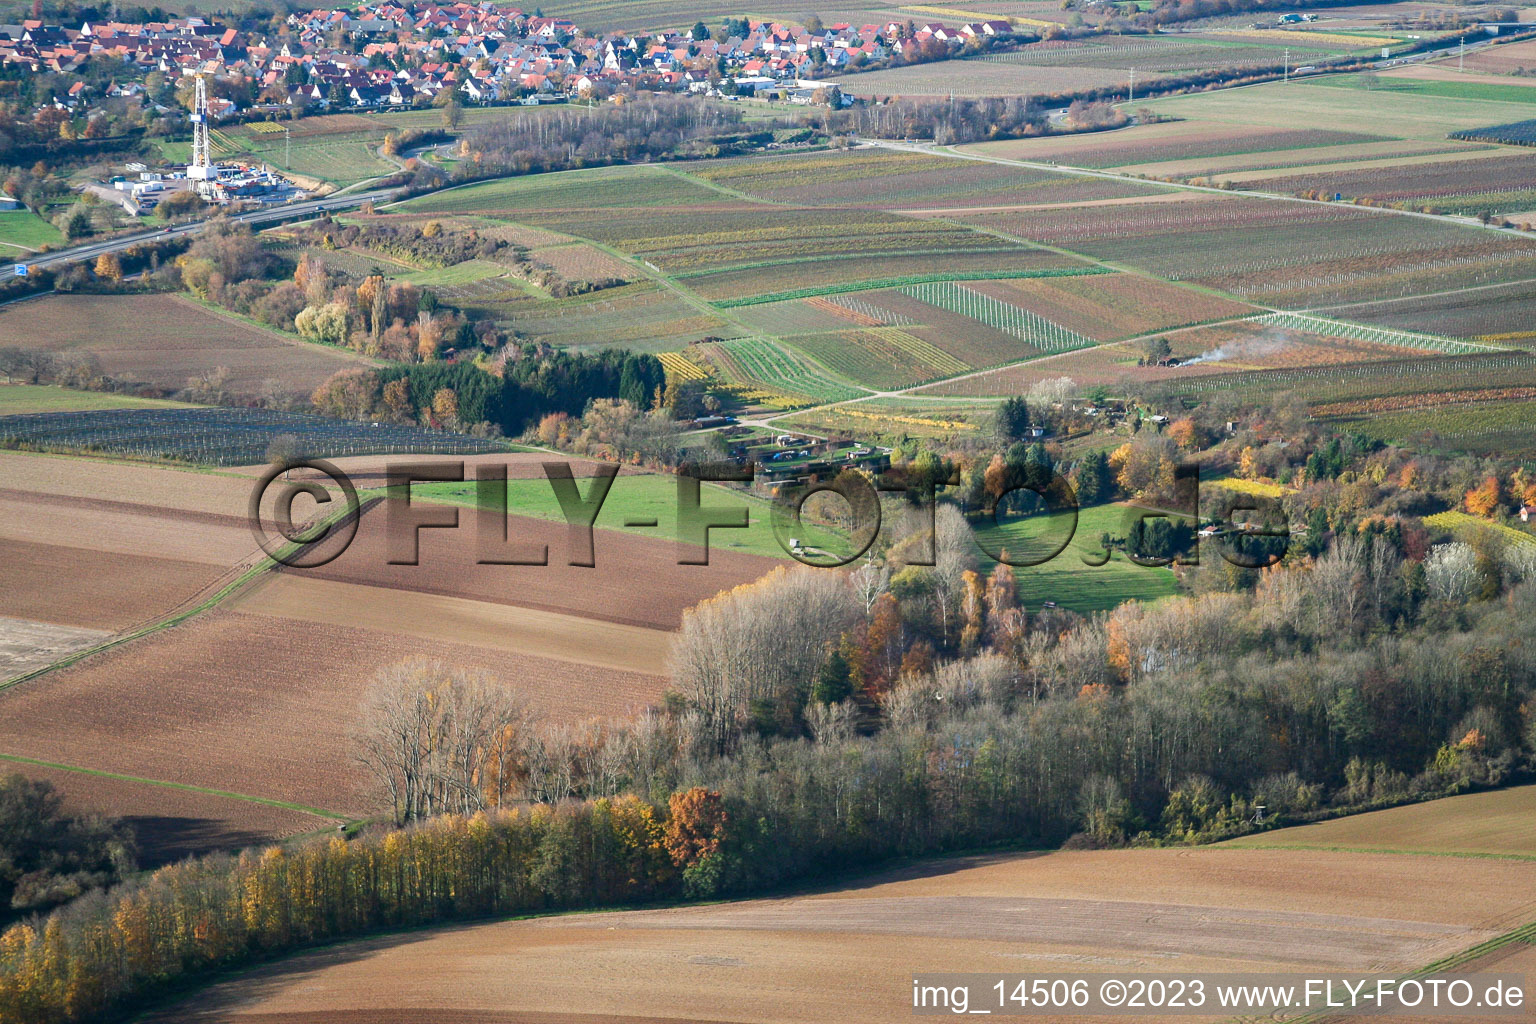 Vue aérienne de À la cabane du pêcheur à Insheim dans le département Rhénanie-Palatinat, Allemagne